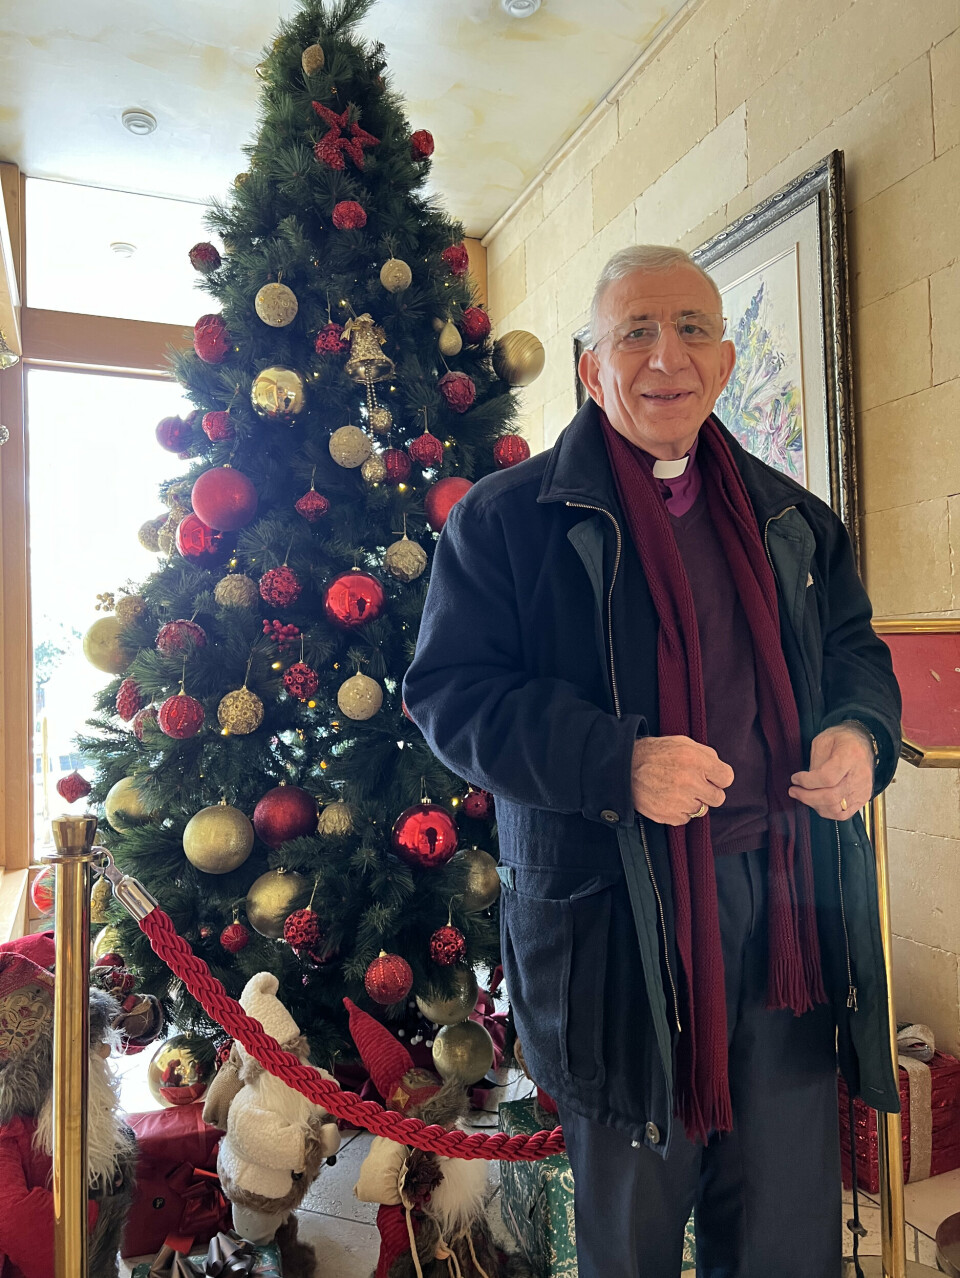 KLAR FOR JUL: Biskop emeritus Munib Younan ser fram til å feire
juledagene sammen med familien i Jerusalem. - På julaften deltar vi
alle som seg hør og bør i Gudstjenesten i Christmas Church i Betlehem,
forteller han.